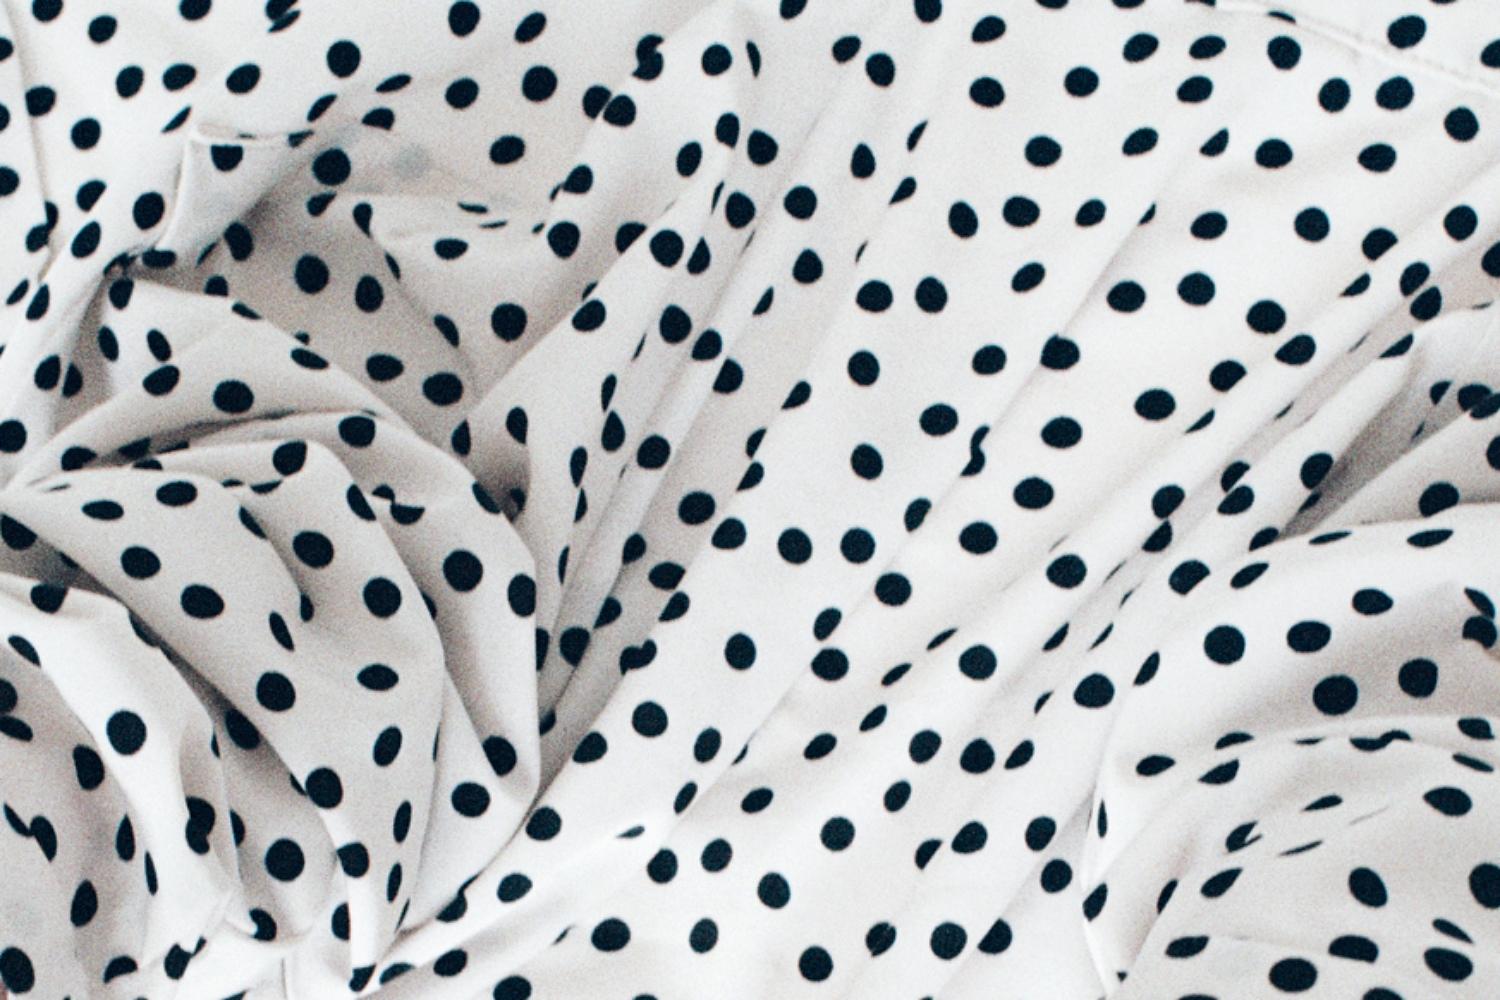 a dot dot dot – Ina Jang, Abstract, Minimalistic, Surrealism, Hands, Dots 3